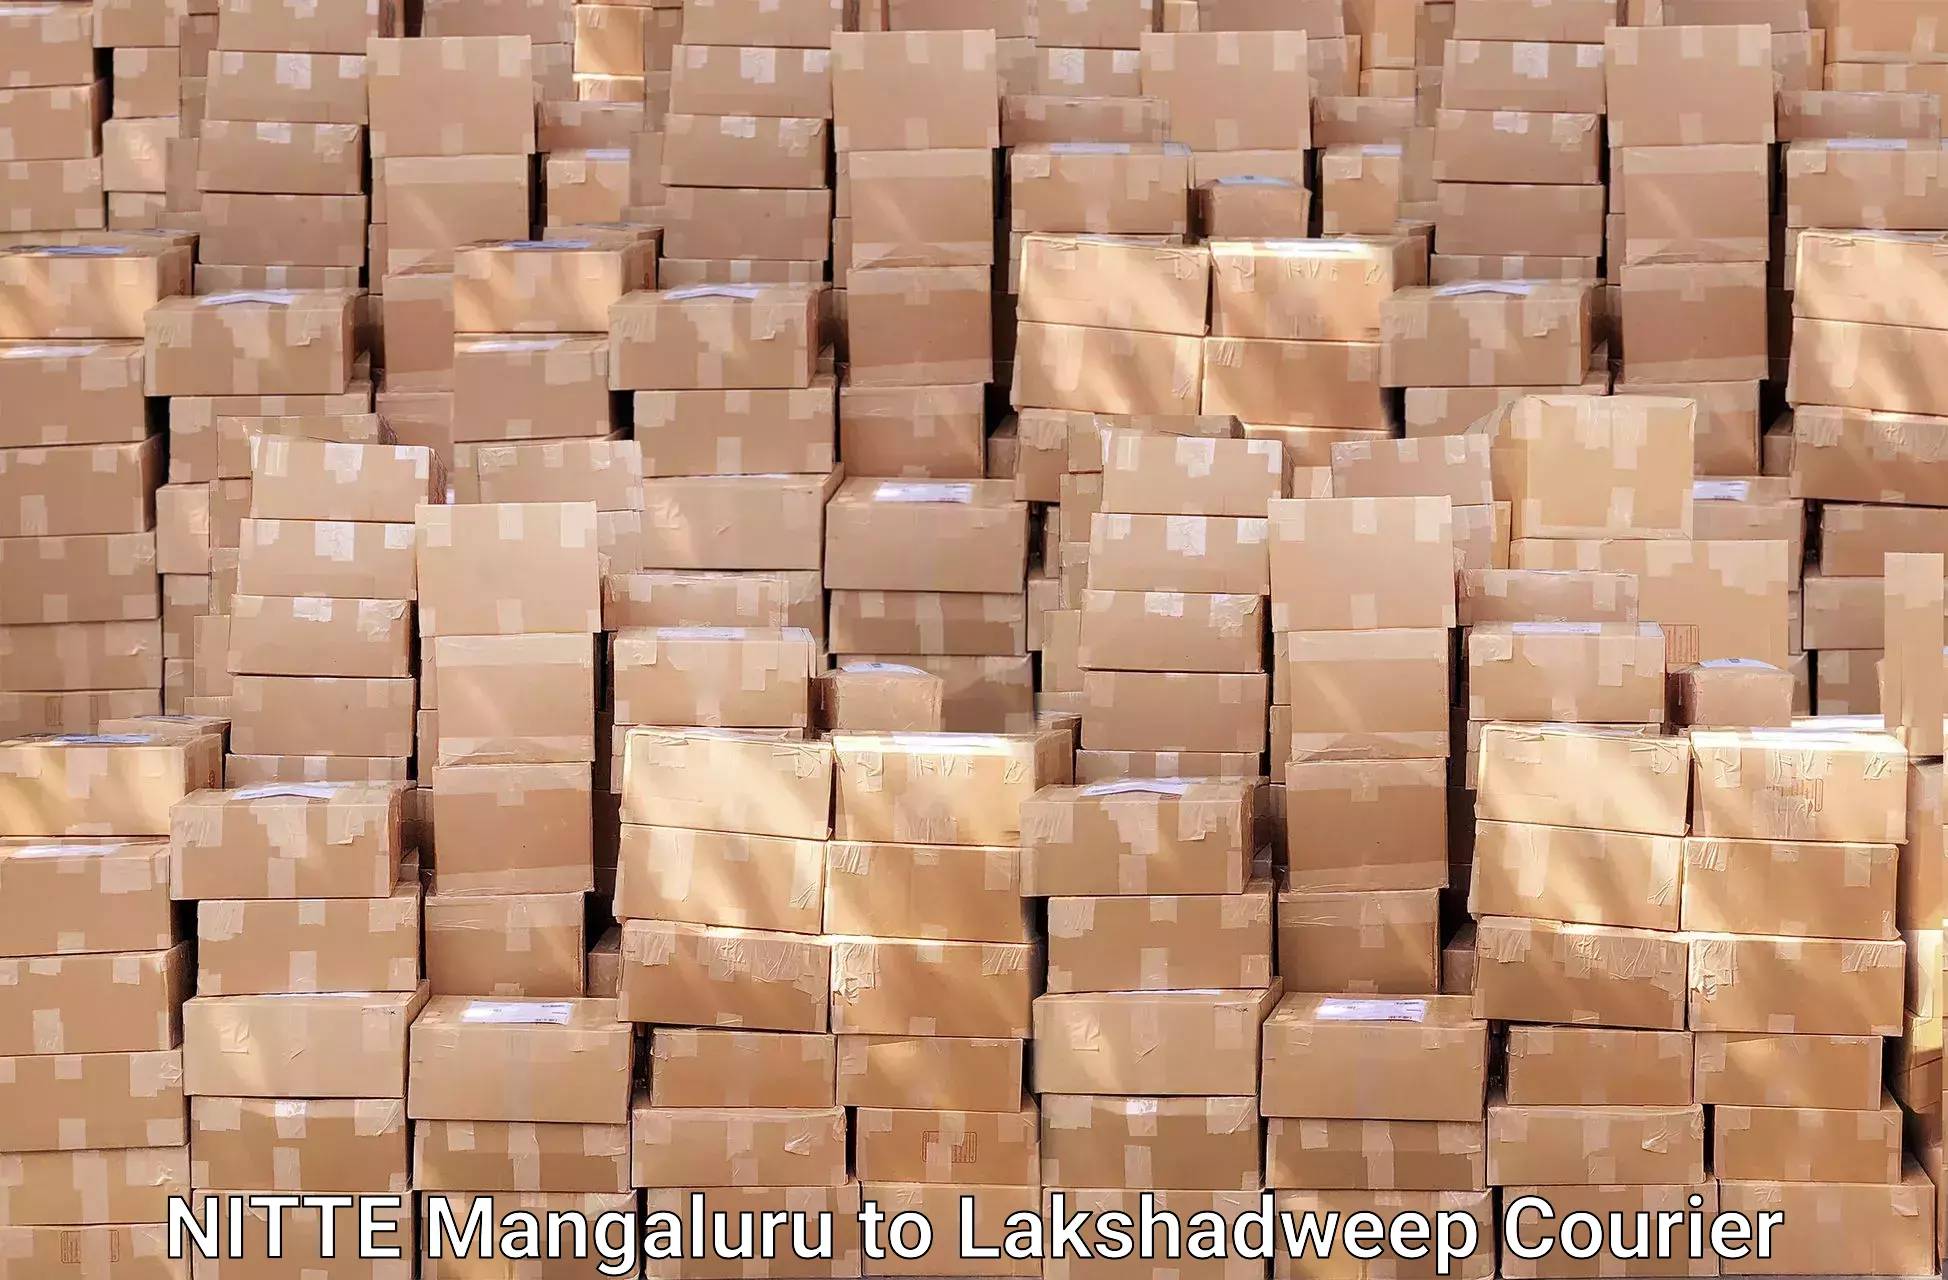 Professional furniture shifting NITTE Mangaluru to Lakshadweep